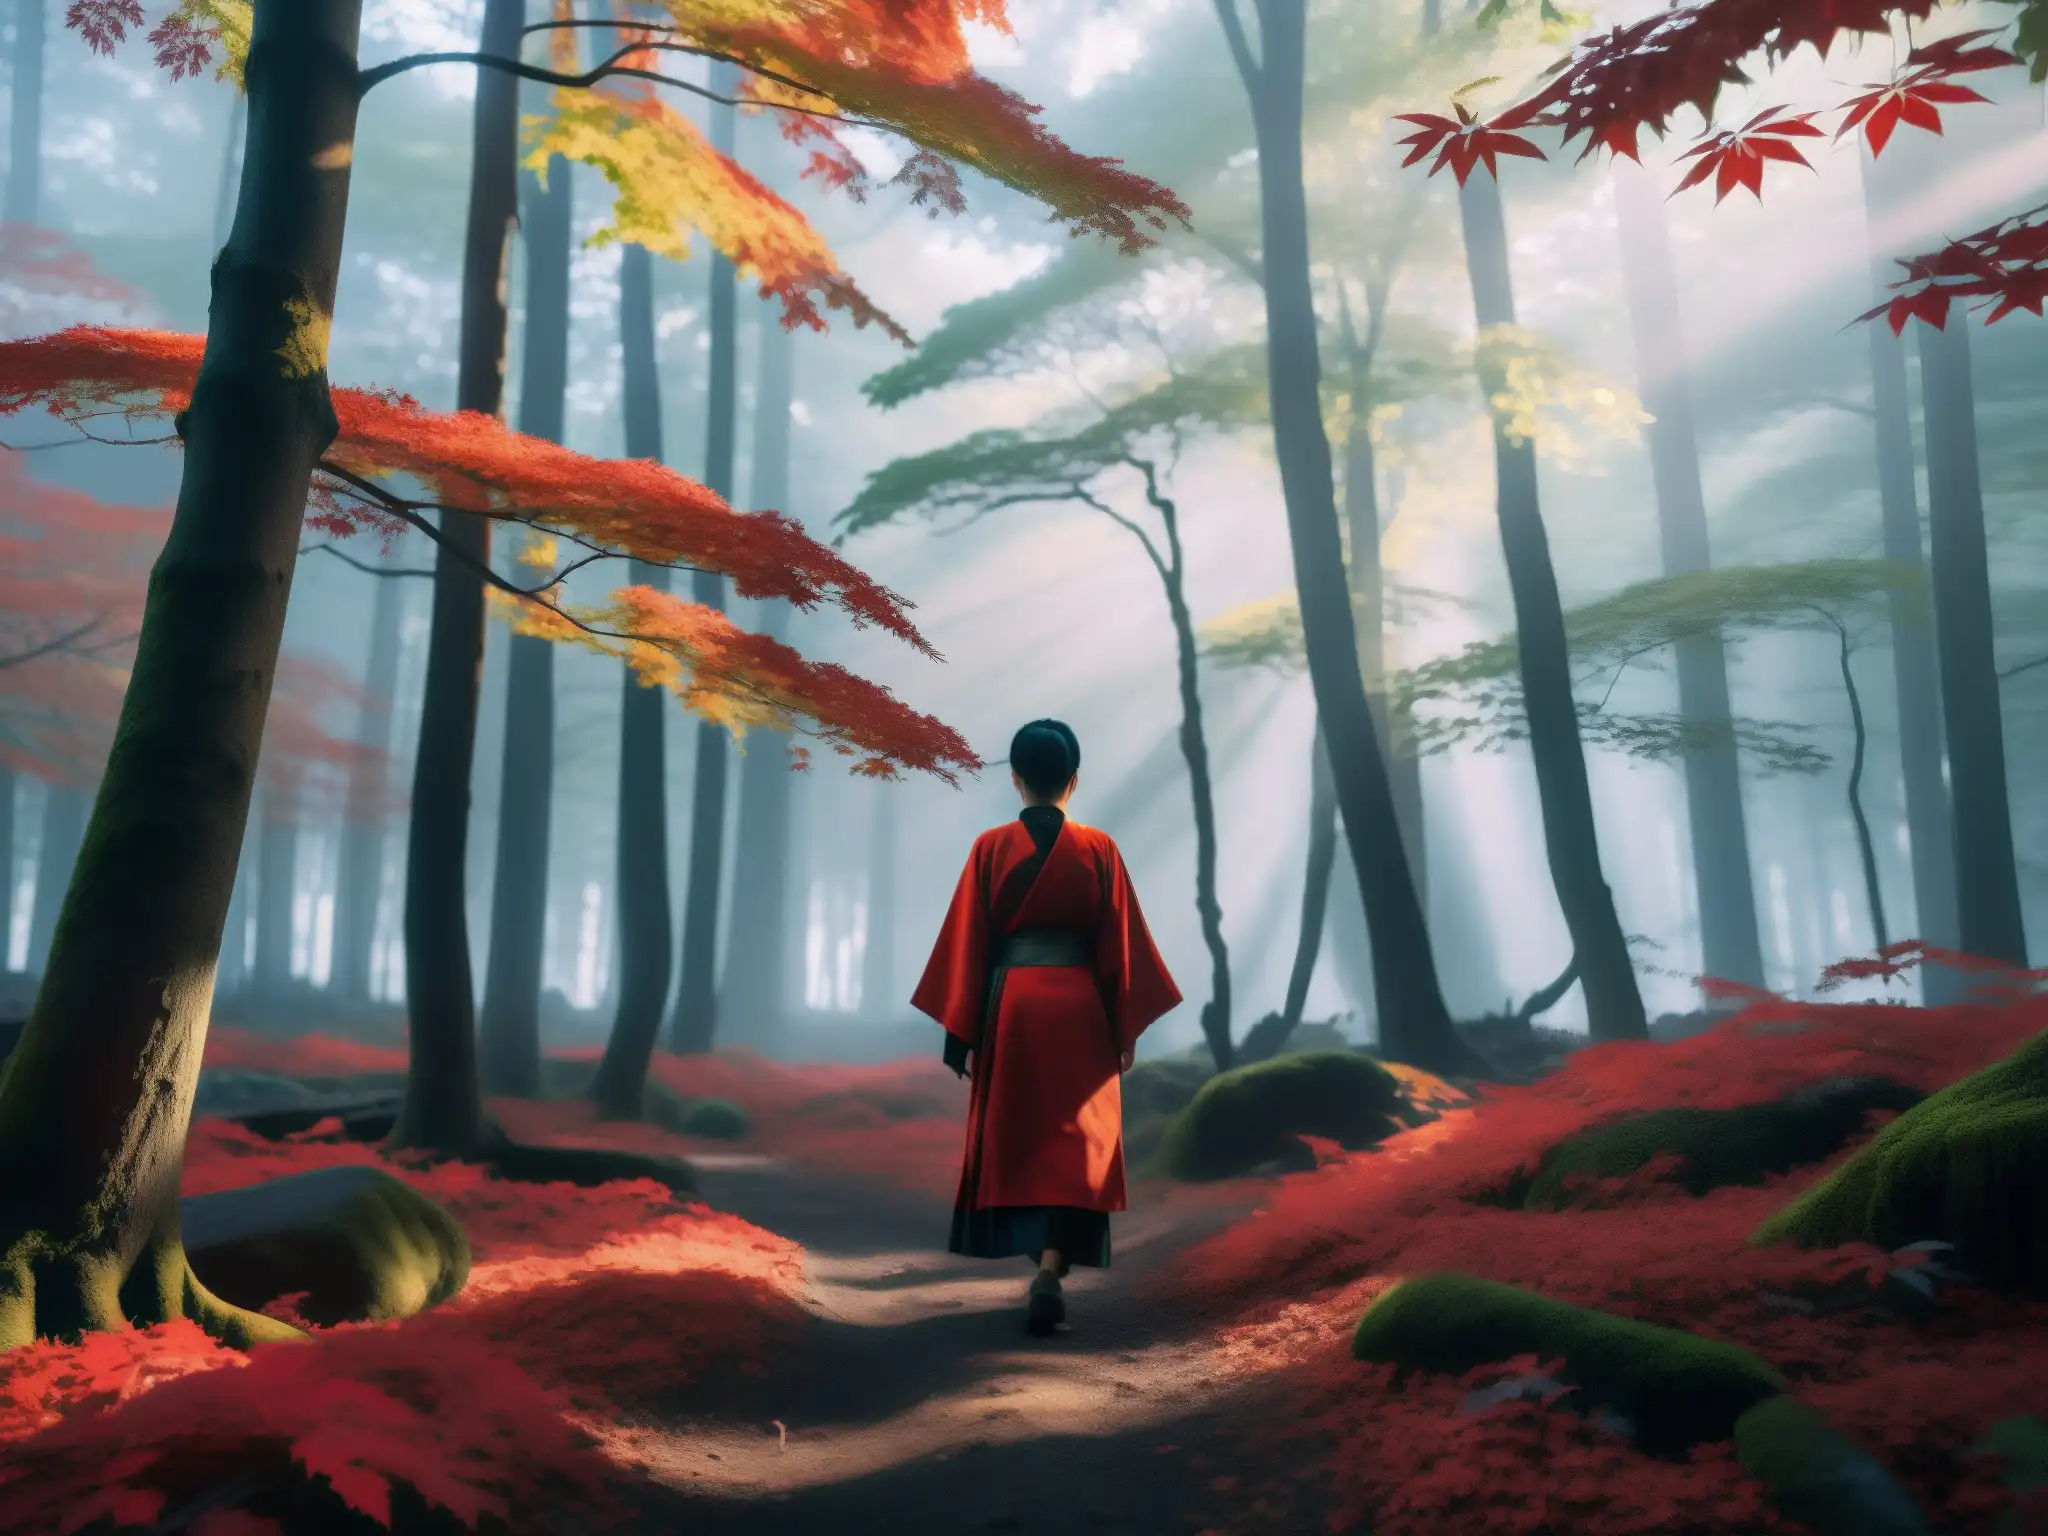 Espíritu Rojo: bosque japonés místico con hojas de arce rojas y figura entre los árboles, evocando belleza natural